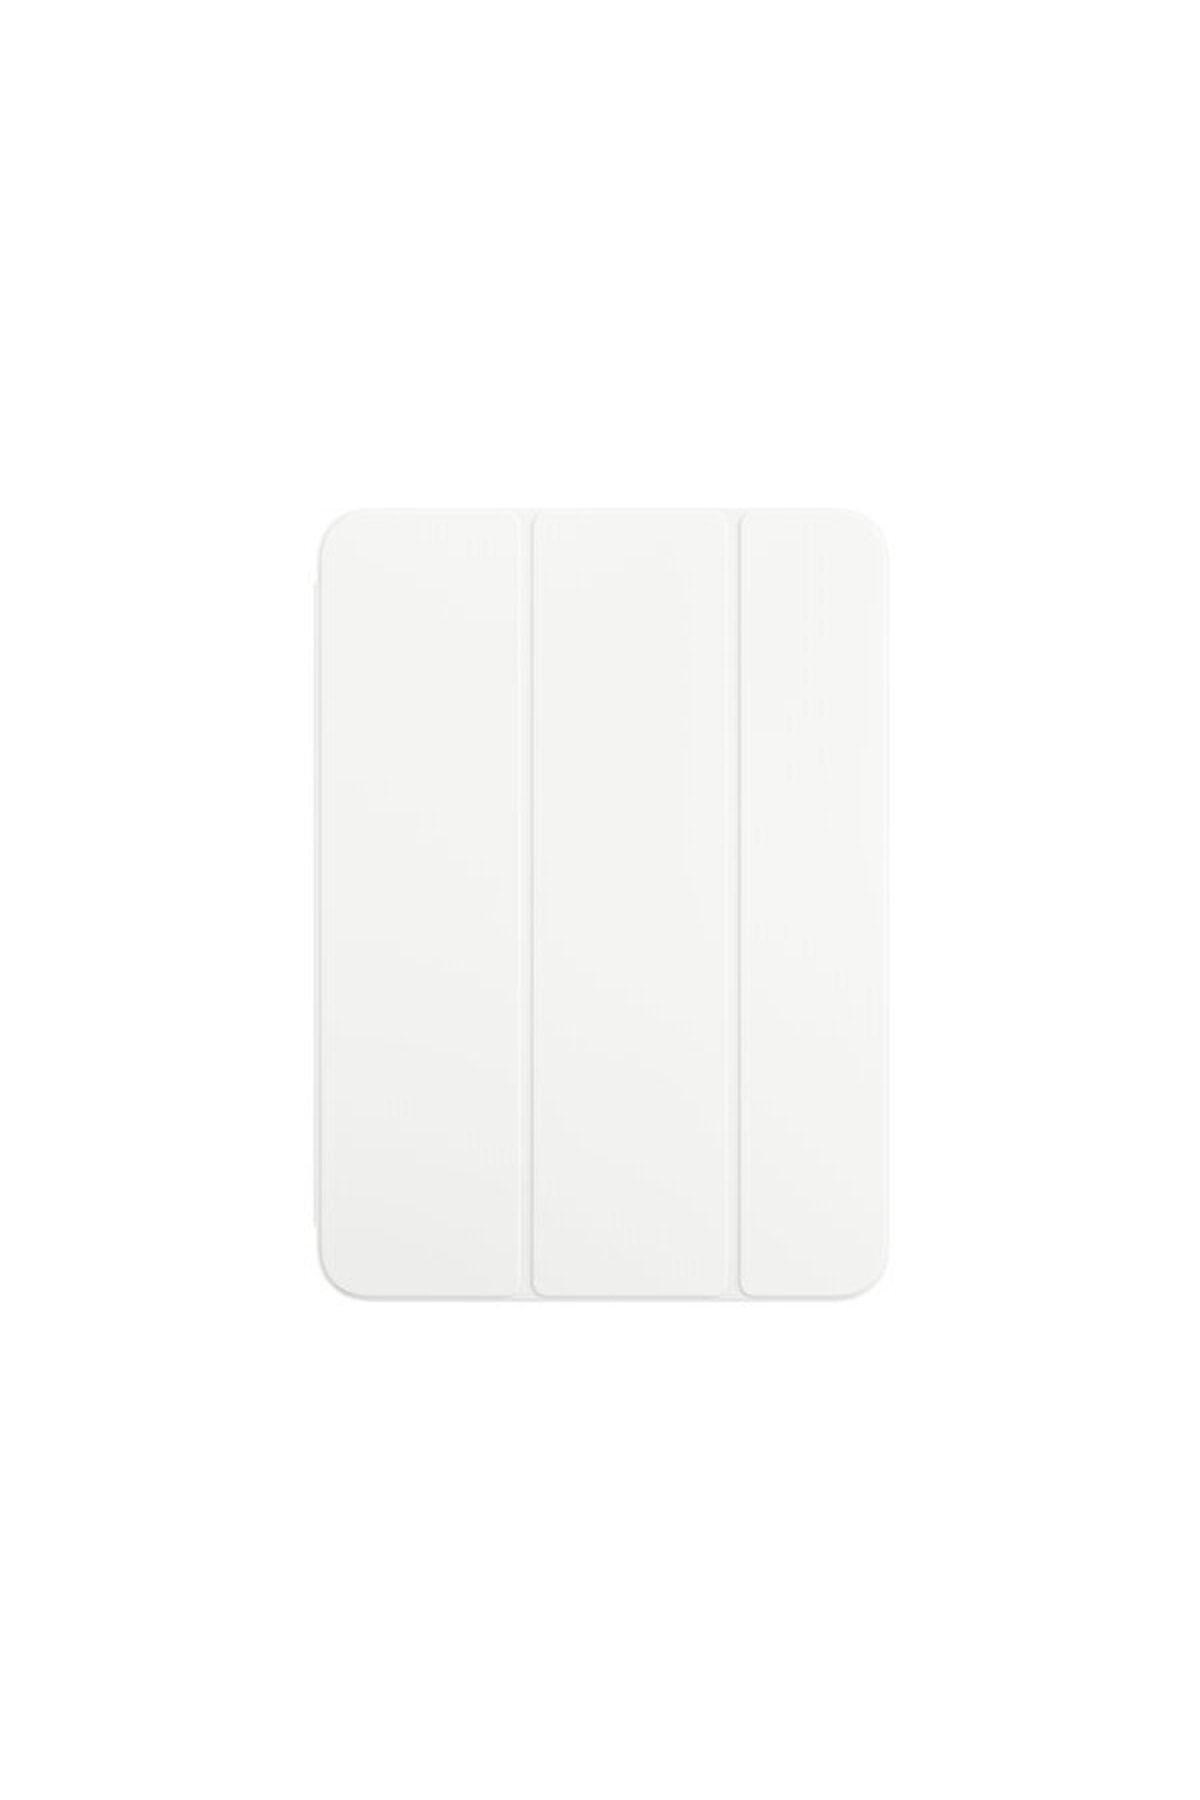 Apple Smart Folio Ipad 10. Nesil Uyumlu Tablet Kılıfı Koyu Beyaz Mqdq3zm/a